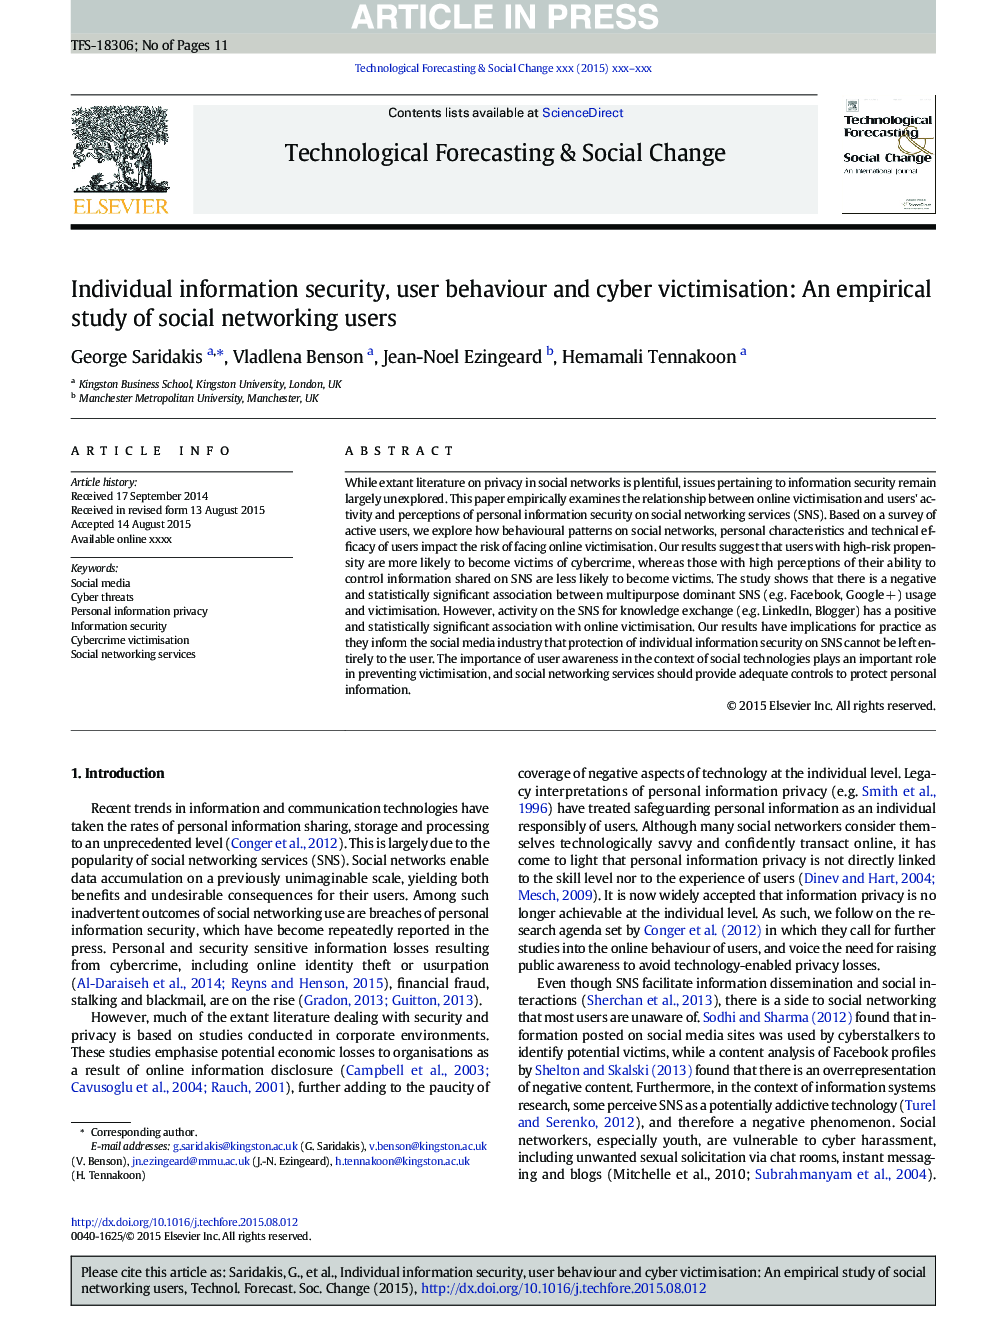 امنیت اطلاعات فردی، رفتار کاربر و قربانی سازی سایبری: مطالعه تجربی از کاربران شبکه های اجتماعی 